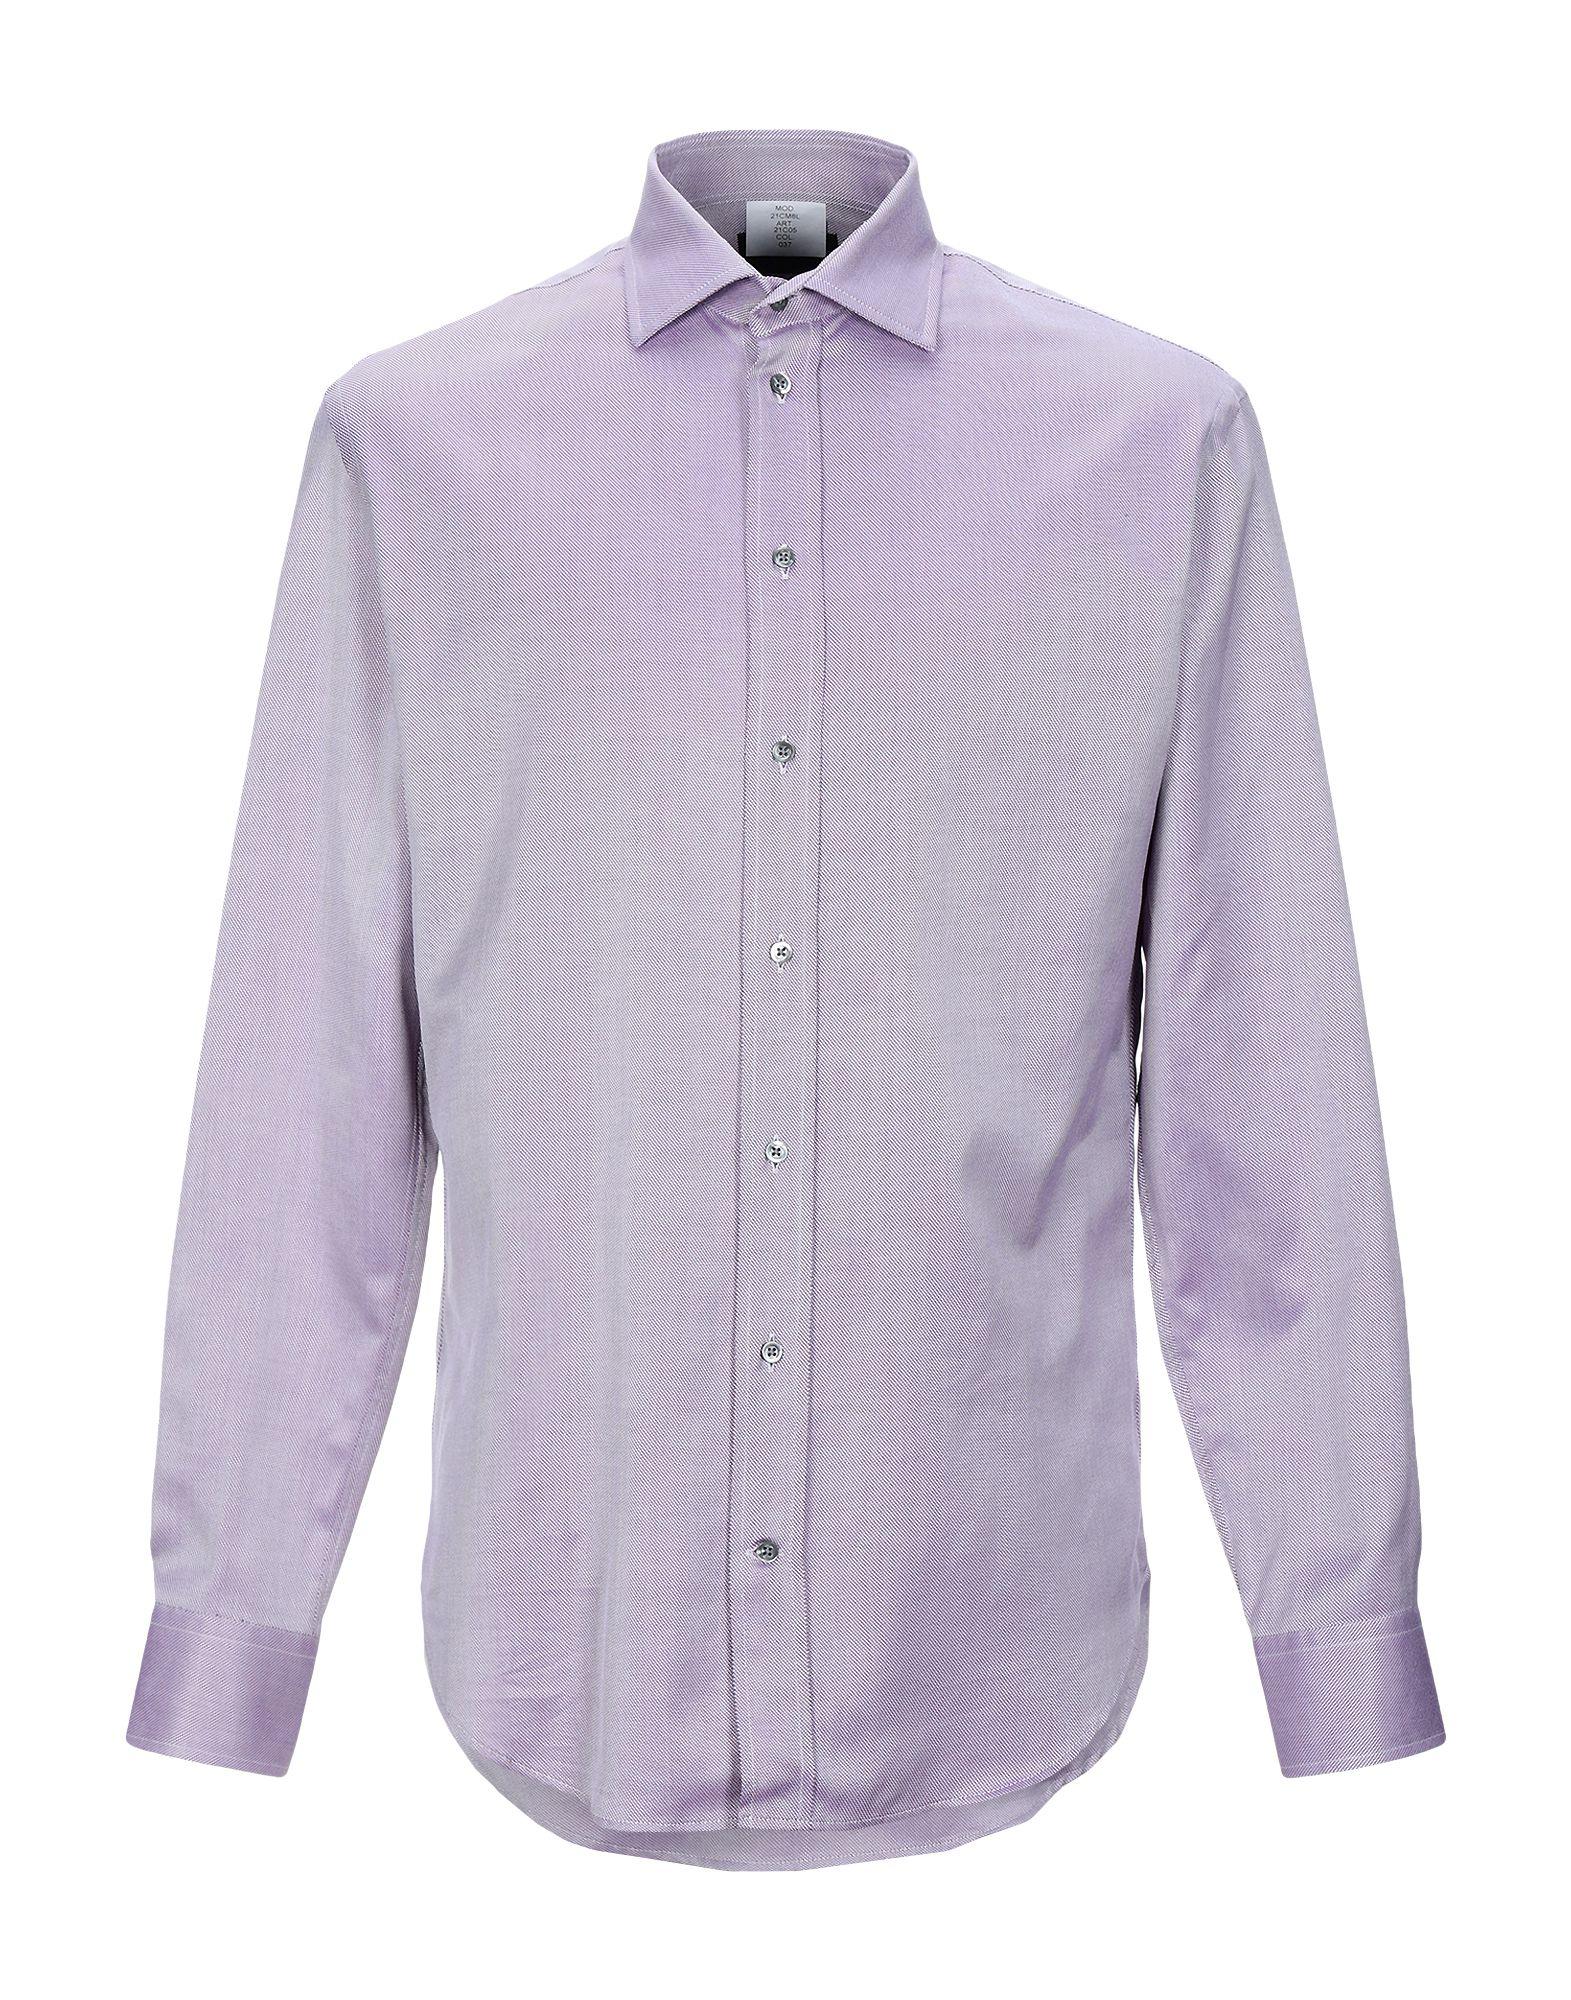 Emporio Armani Cotton Shirt in Mauve (Purple) for Men - Lyst